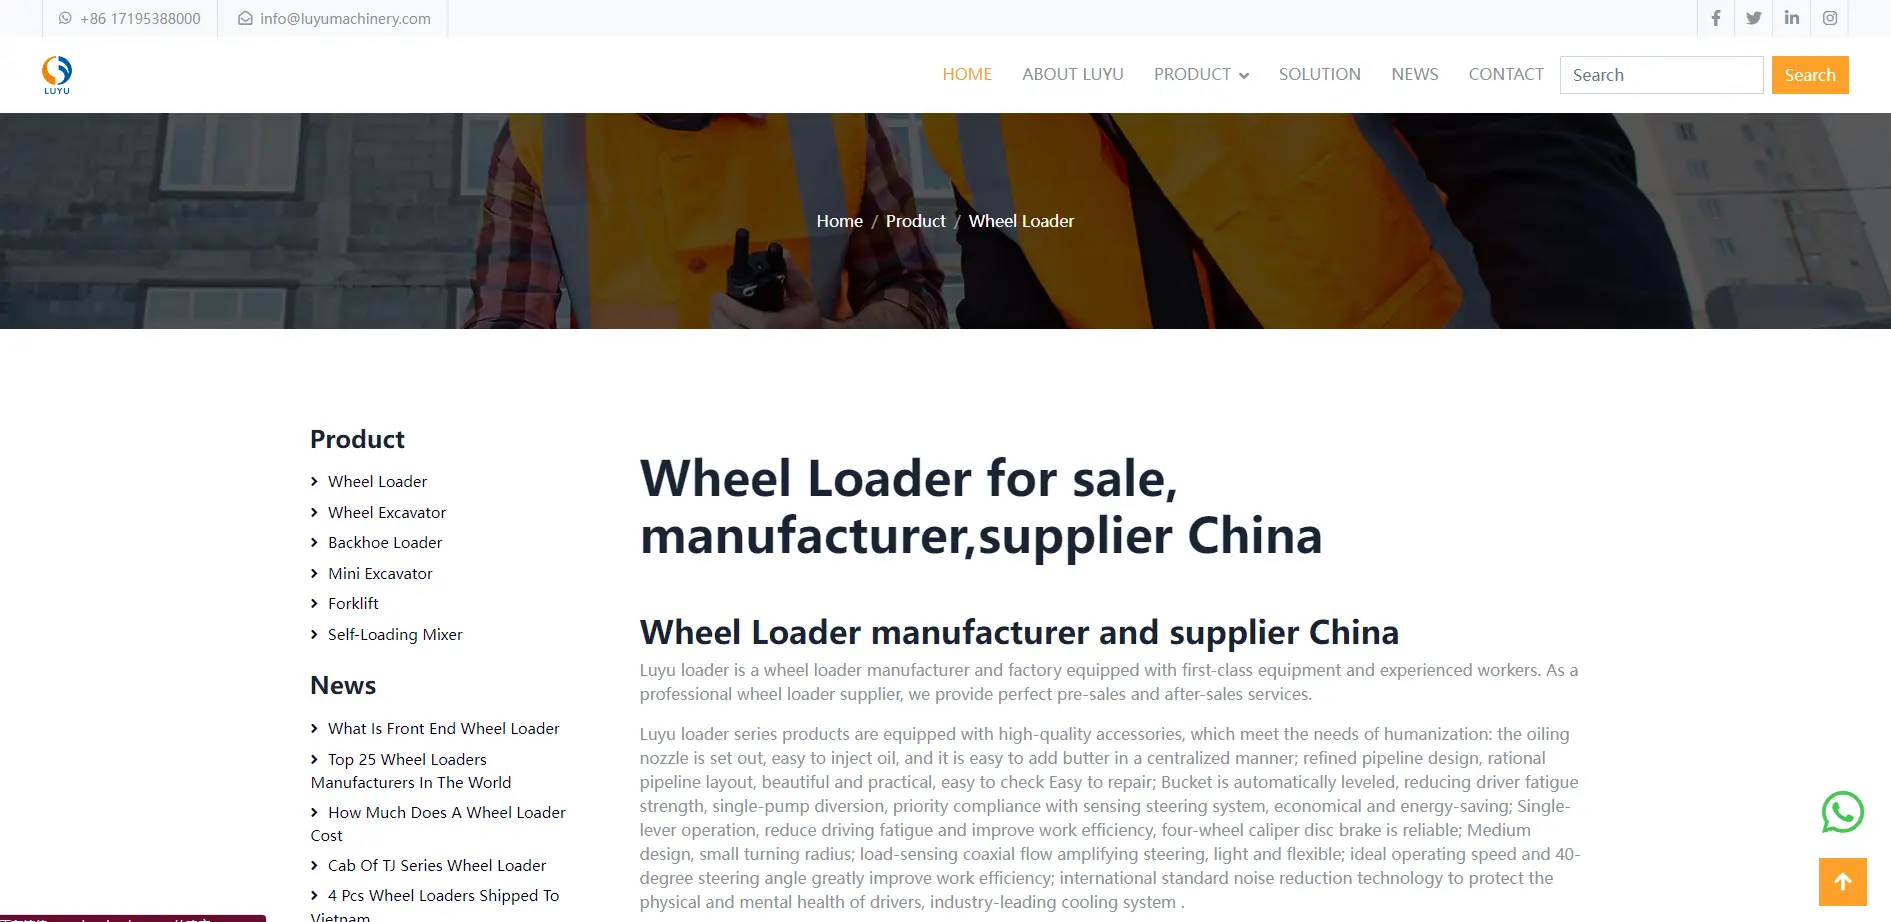 wheel-loaders-for-sale-near-me.webp